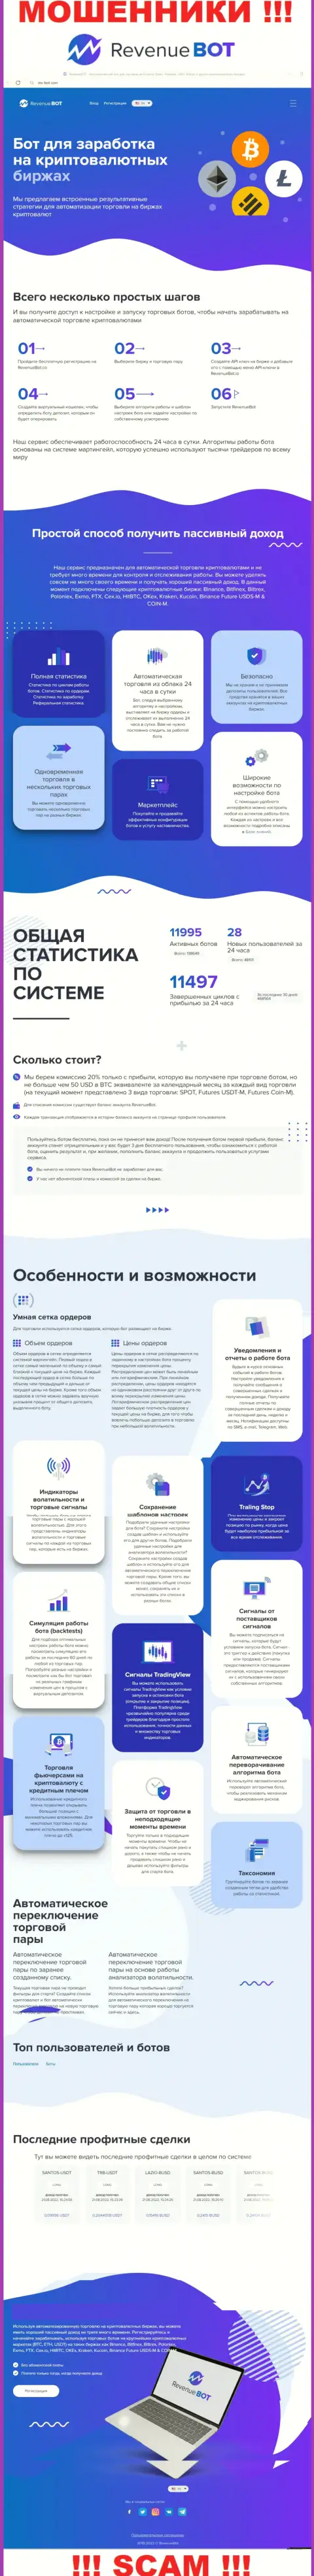 Рев-Бот Ком - официальный интернет-ресурс мошенников Ревенью БОТ